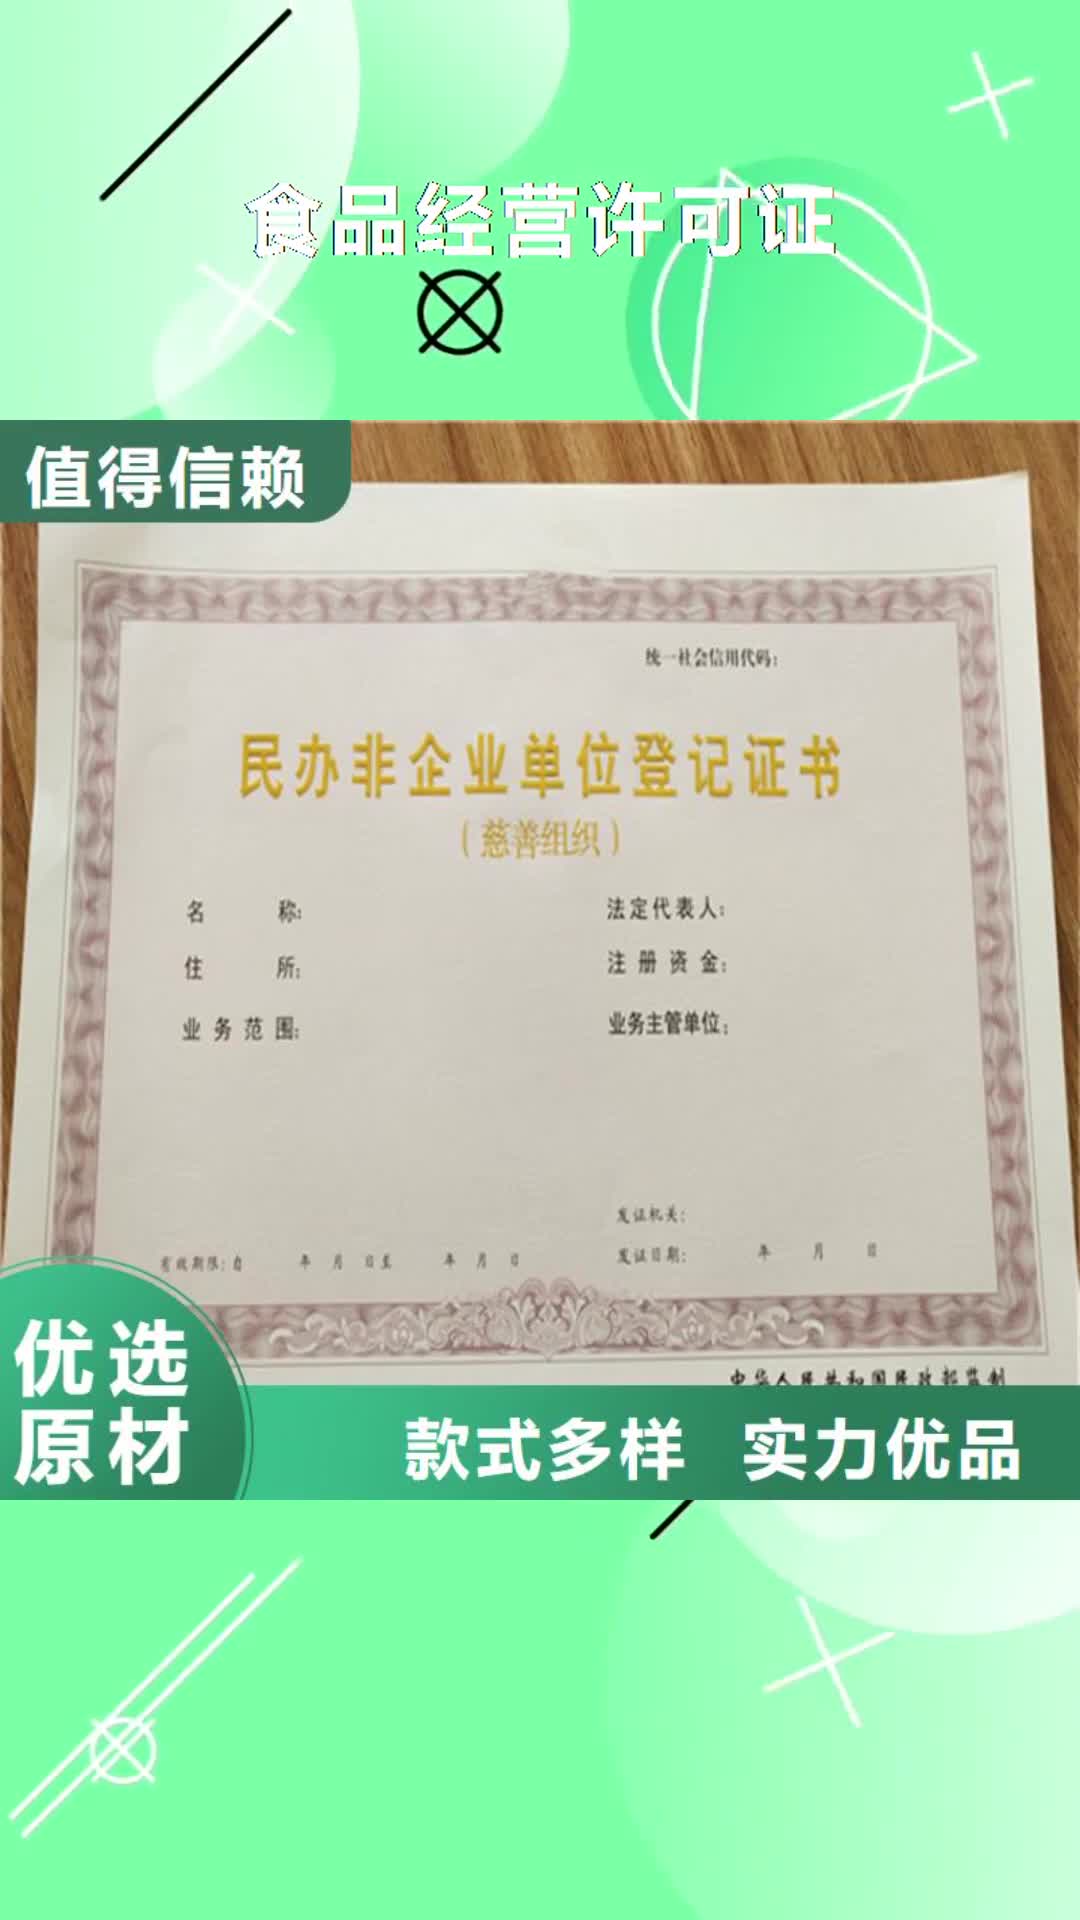 肇庆【食品经营许可证】防伪印刷厂N年专注